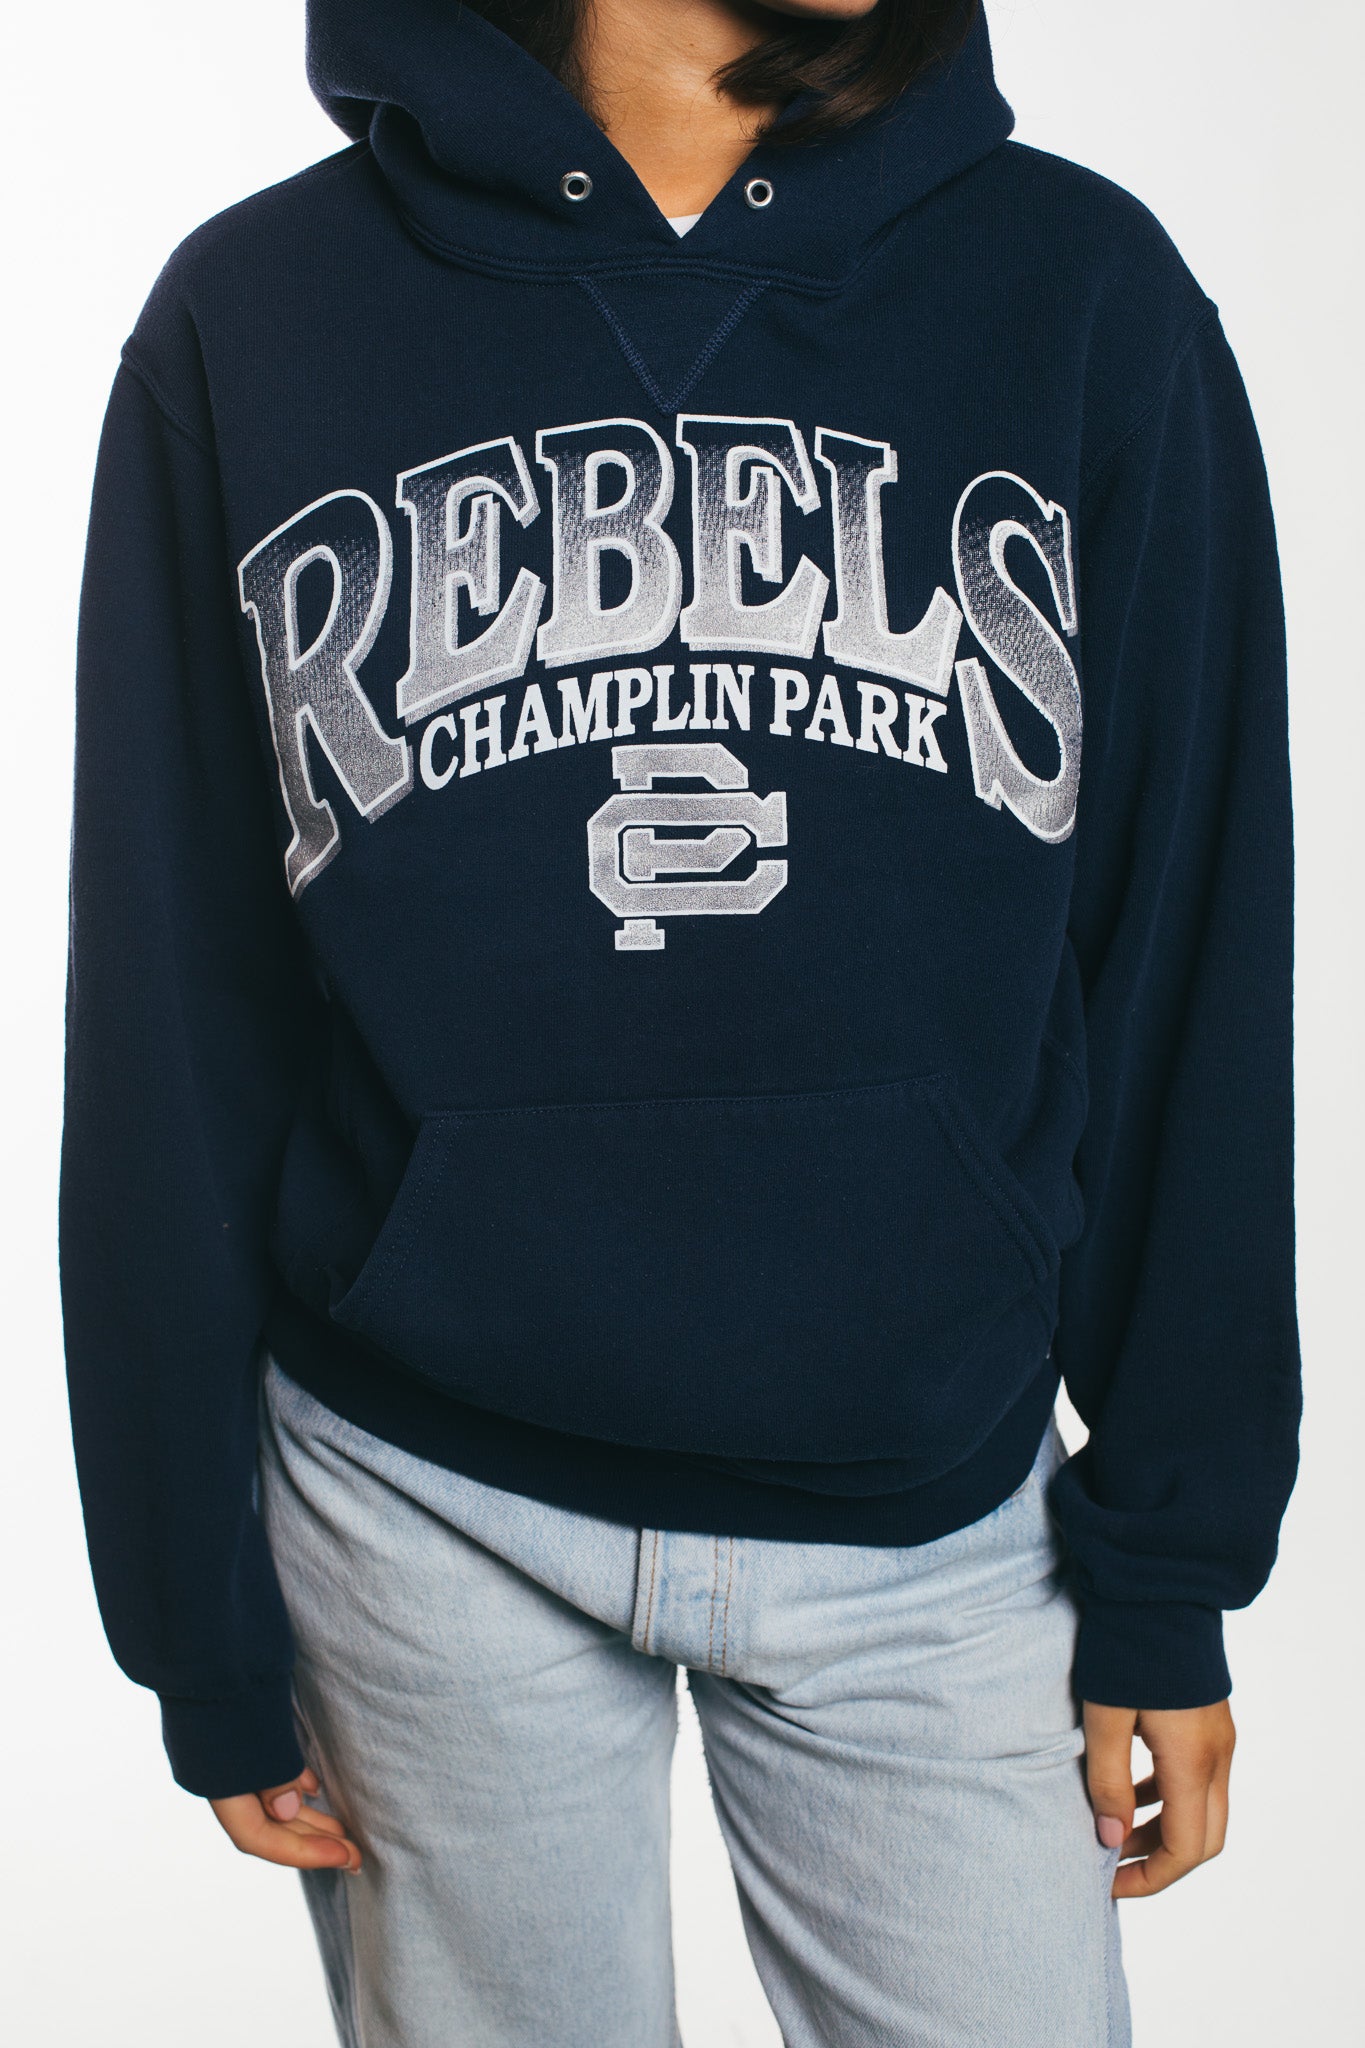 Rebels Champlin Park - Hoodie (S)